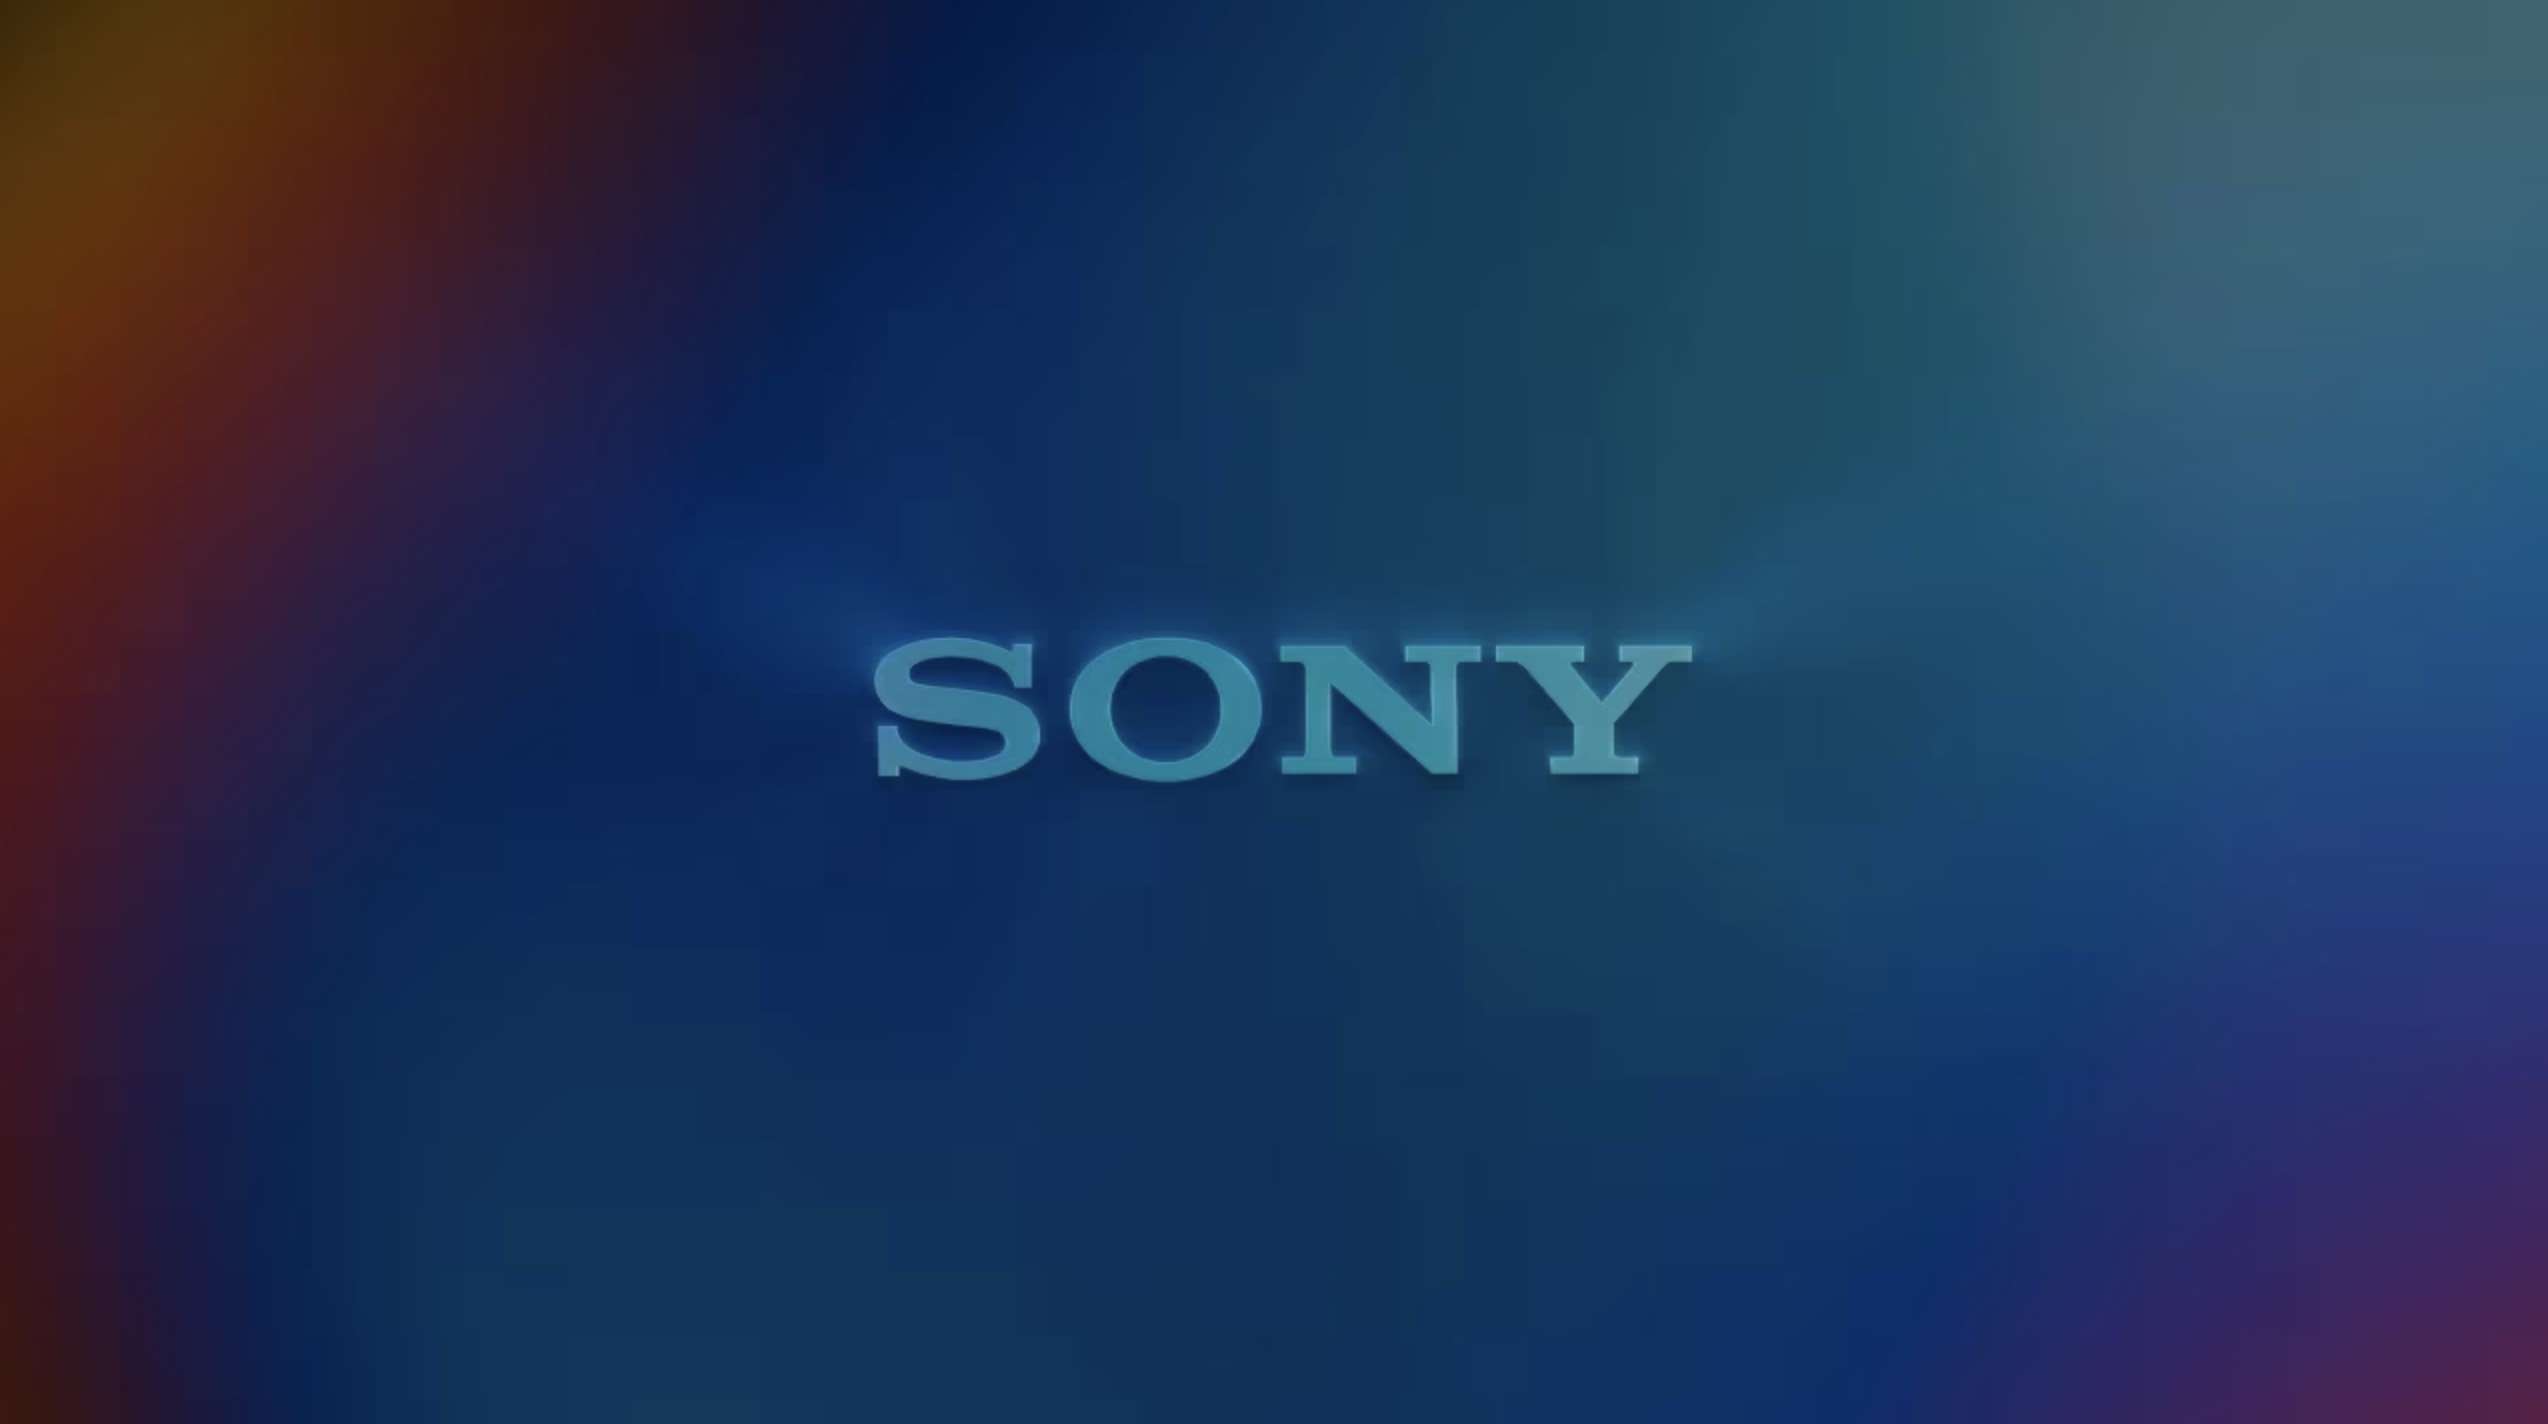 Sony kasuje znany serwis VoD. W tle usuwanie dostępu i podwyżka cen